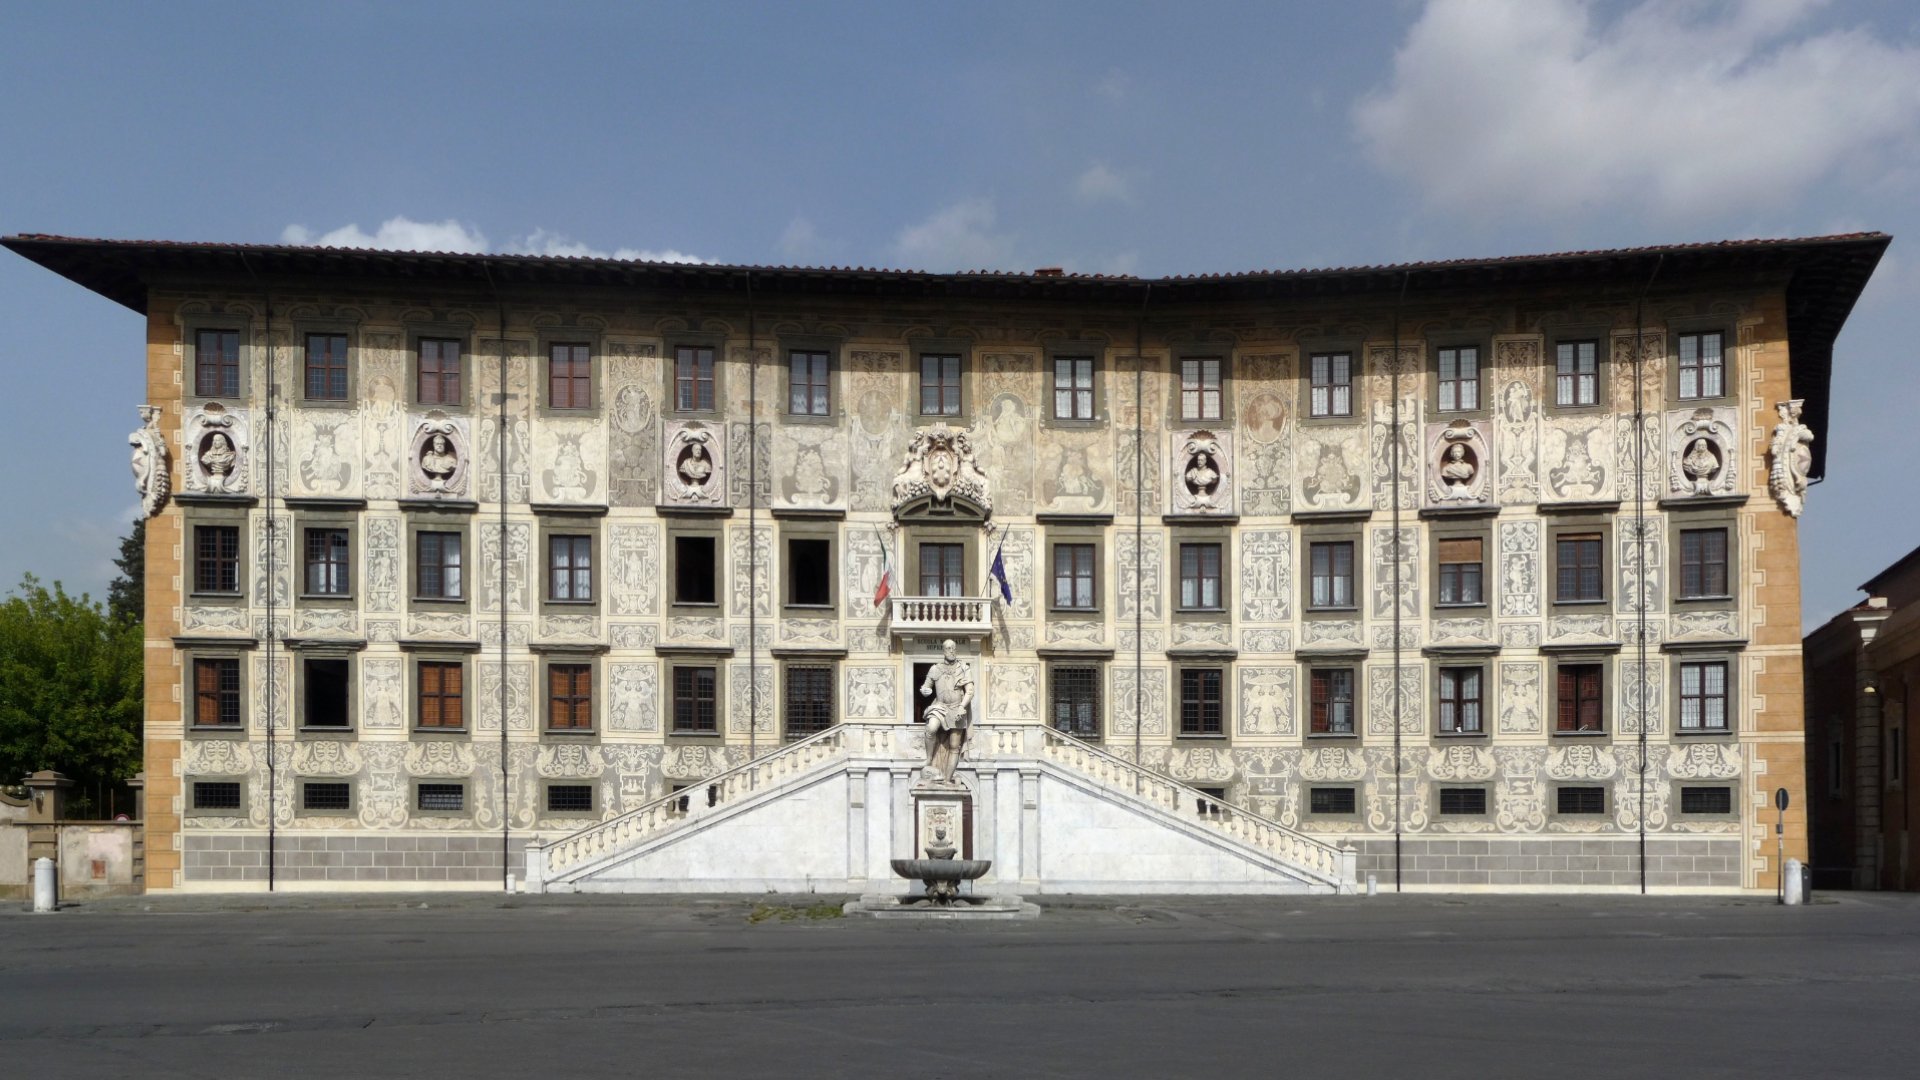 The tour will take you to explore the medieval Piazza dei Cavalieri, venue of the Scuola Normale Superiore di Pisa